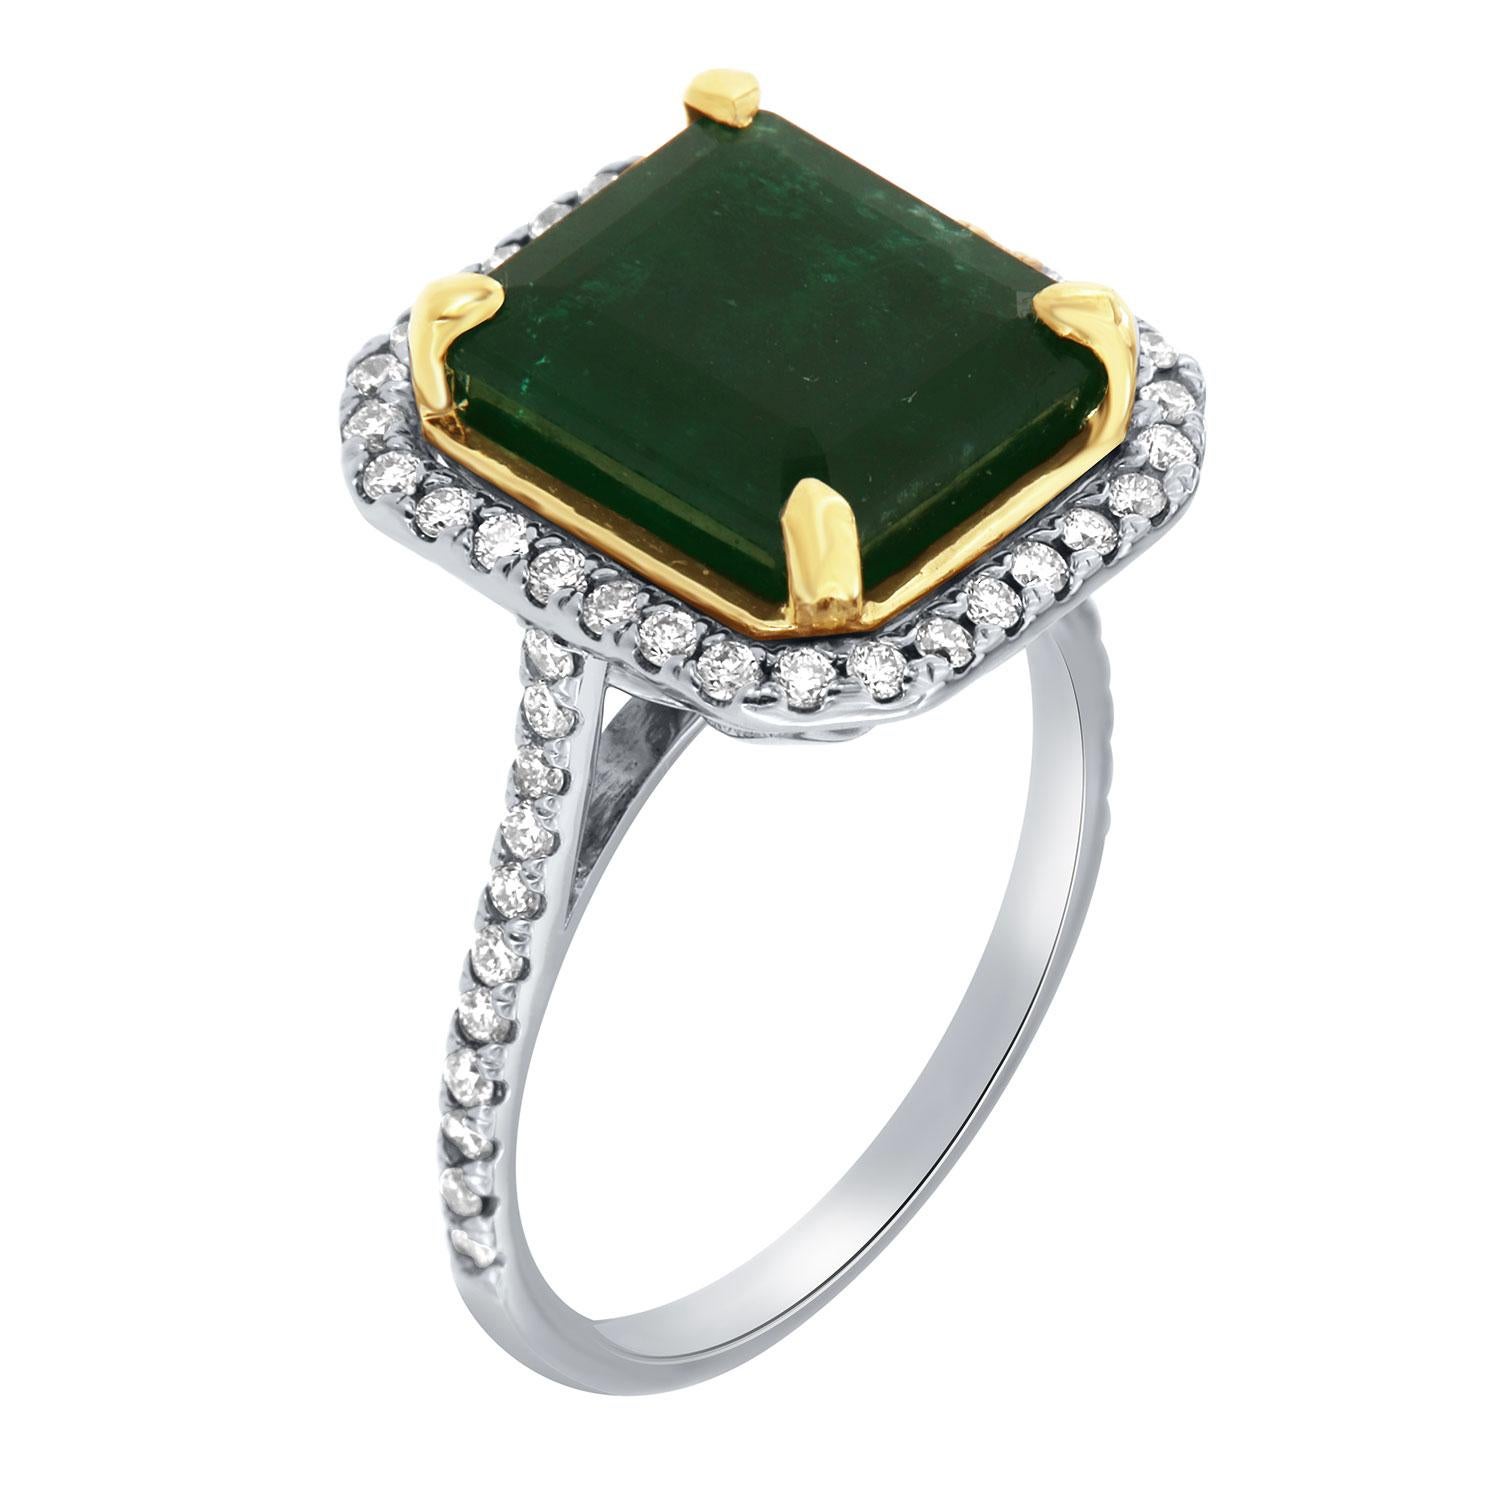 Dieser Ring aus 14 Karat Weiß- und Gelbgold ist mit einem 4,52 Karat großen, natürlichen grünen Smaragd aus Sambia besetzt. Ausgezeichnete tiefgrüne Farbe. Der Smaragd ist von einem Halo aus runden Brillanten auf einem 1,5 mm breiten Band umgeben.